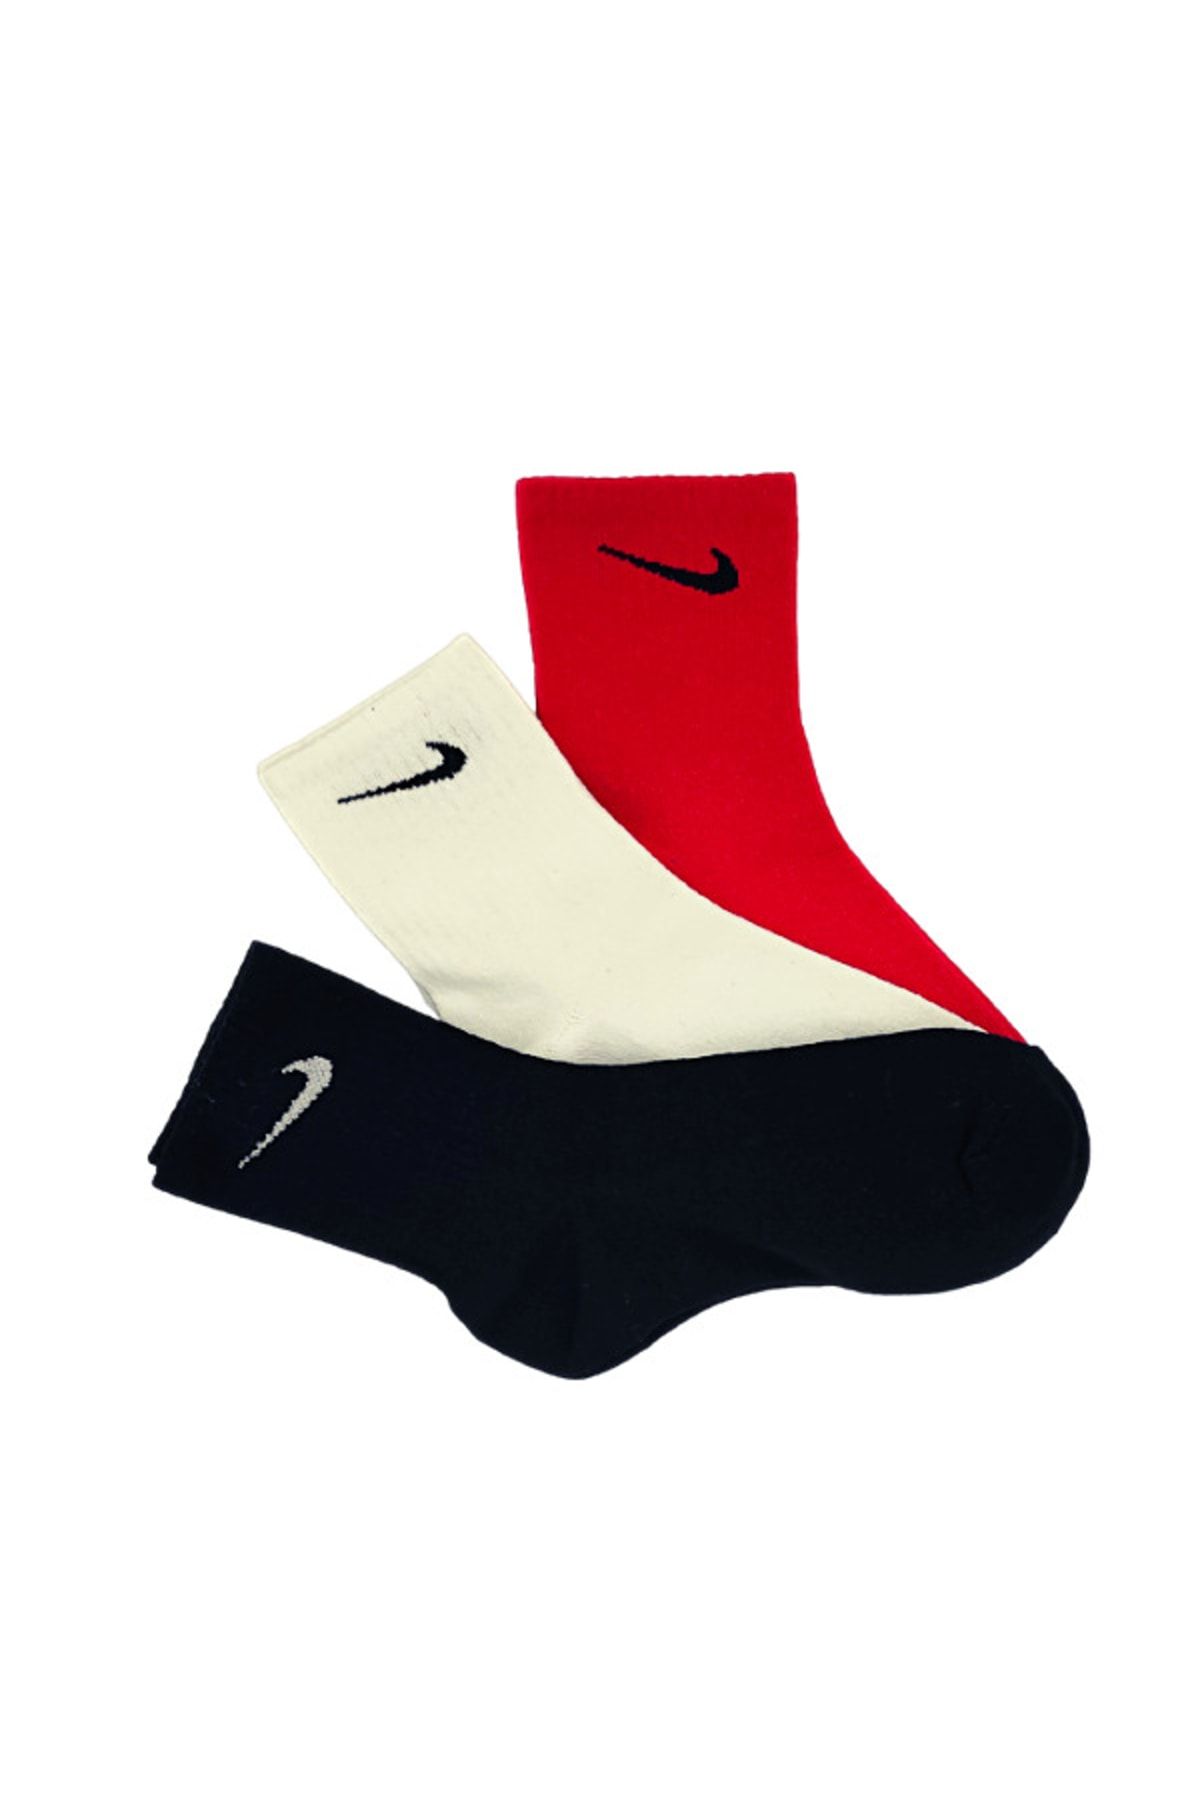 Genel Markalar 3'lü Unisex Kırmızı Beyaz Siyah Antreman Spor Tenis Futbol Basketbol Koşu Soket Çorap Seti